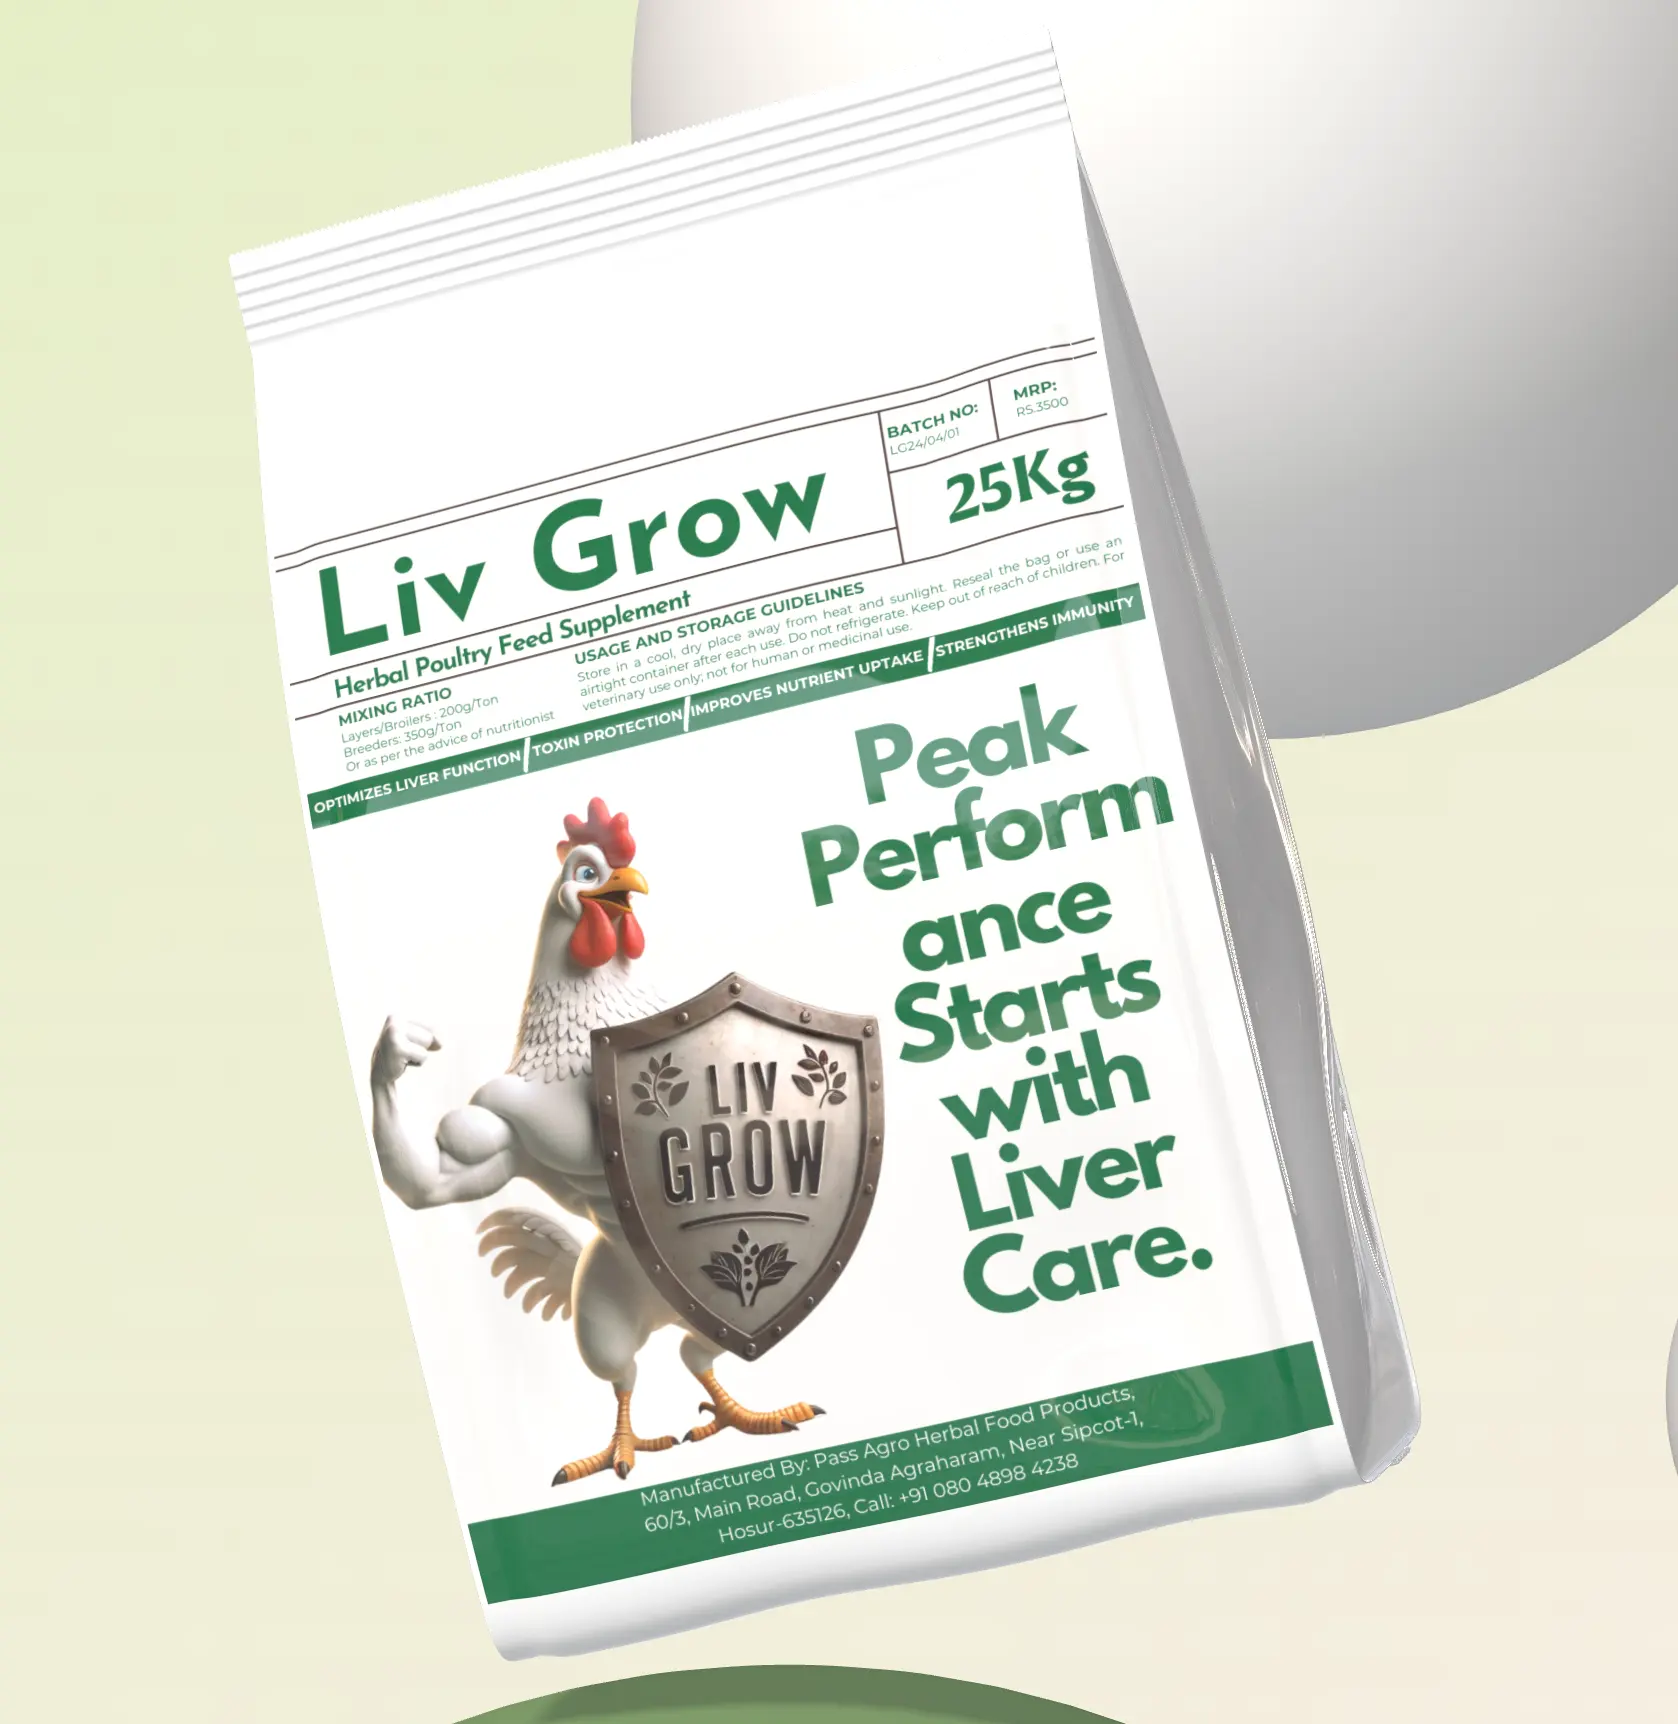 Liv Grow: kümes hayvanları için bitkisel karaciğer sağlık arttırıcı, karaciğer fonksiyonunu optimize eder, büyümeyi ve üretkenliği artırır